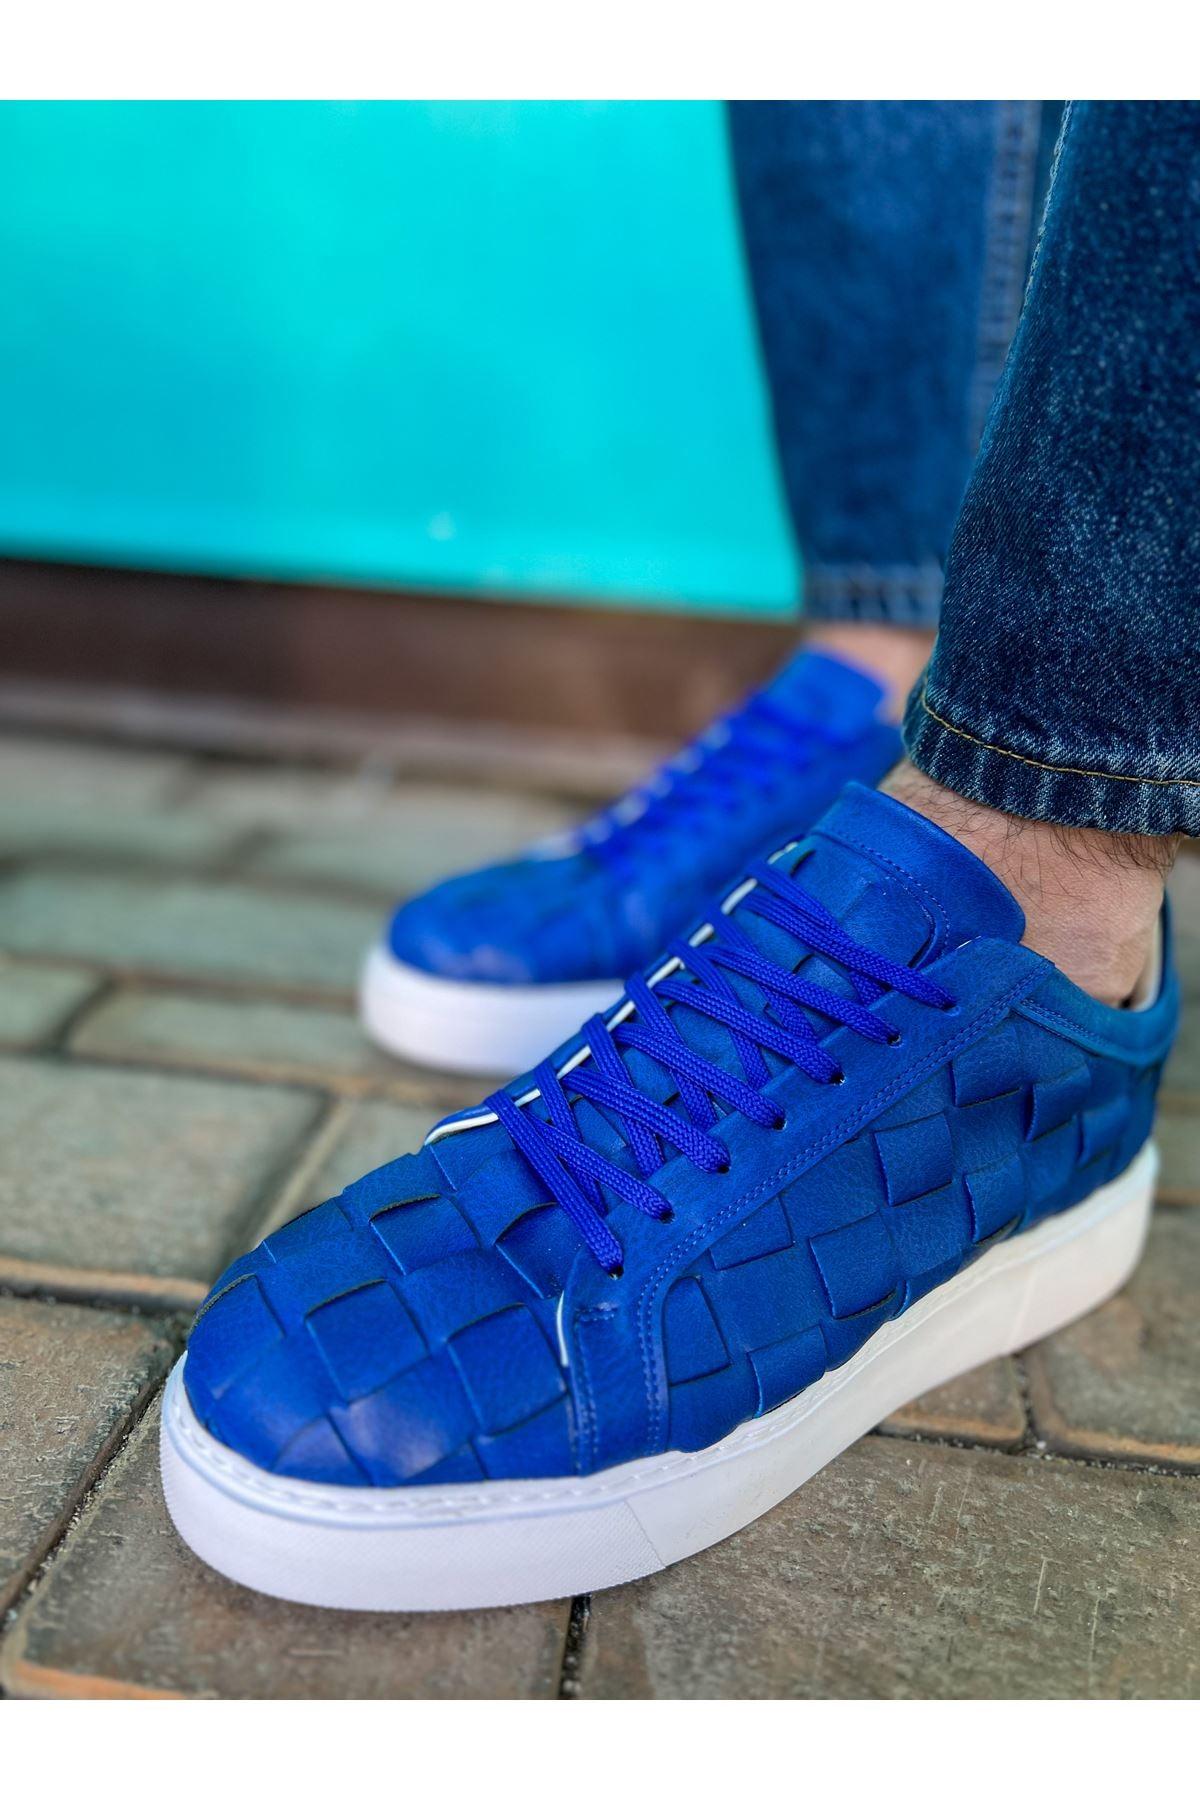 CH209 OBT Vimini Men's Shoes sneakers BLUE - STREET MODE ™